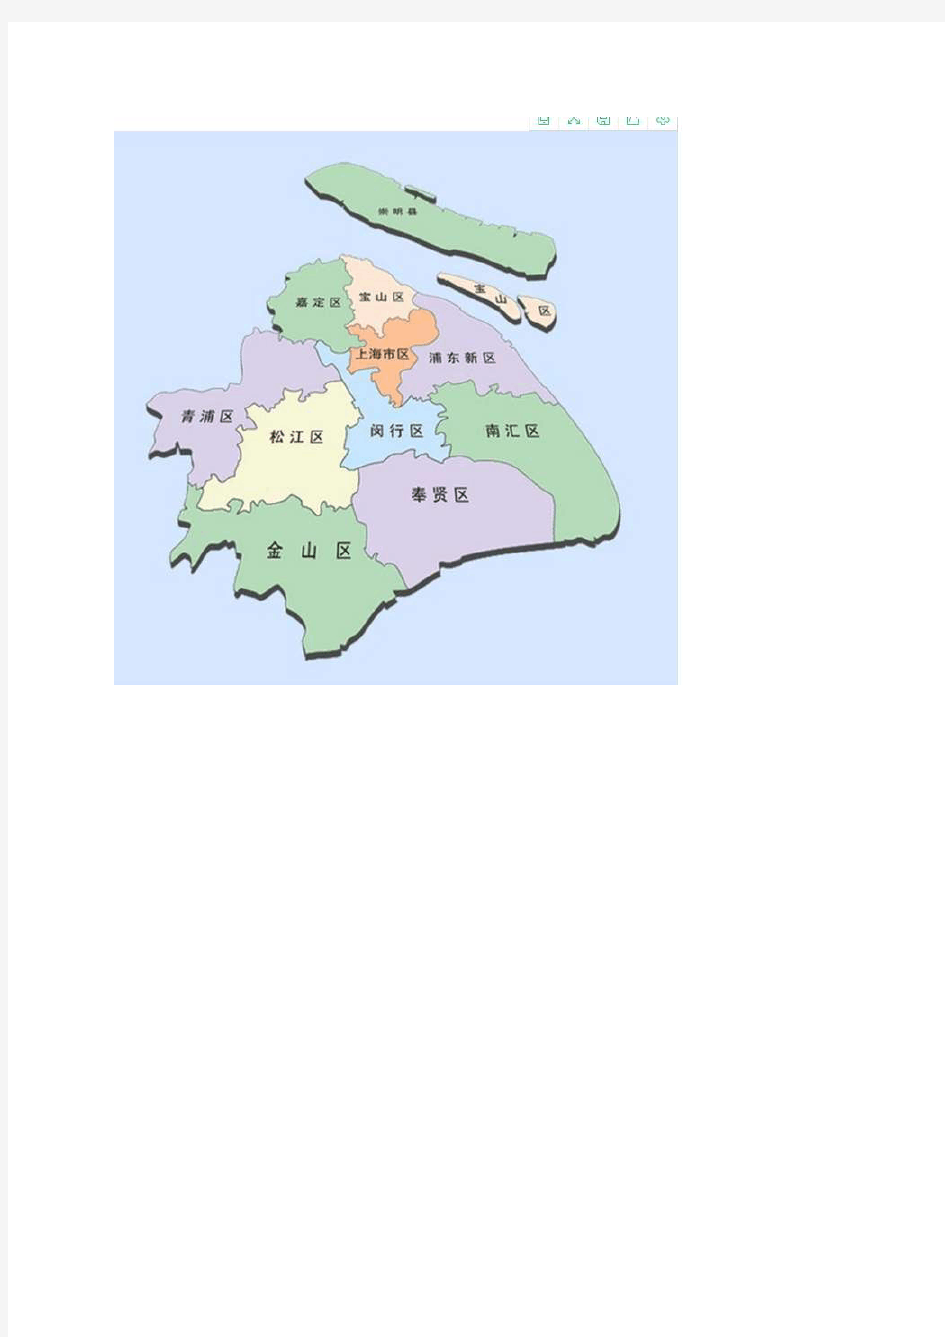 上海行政信息一览表(各区县人口面积地图)